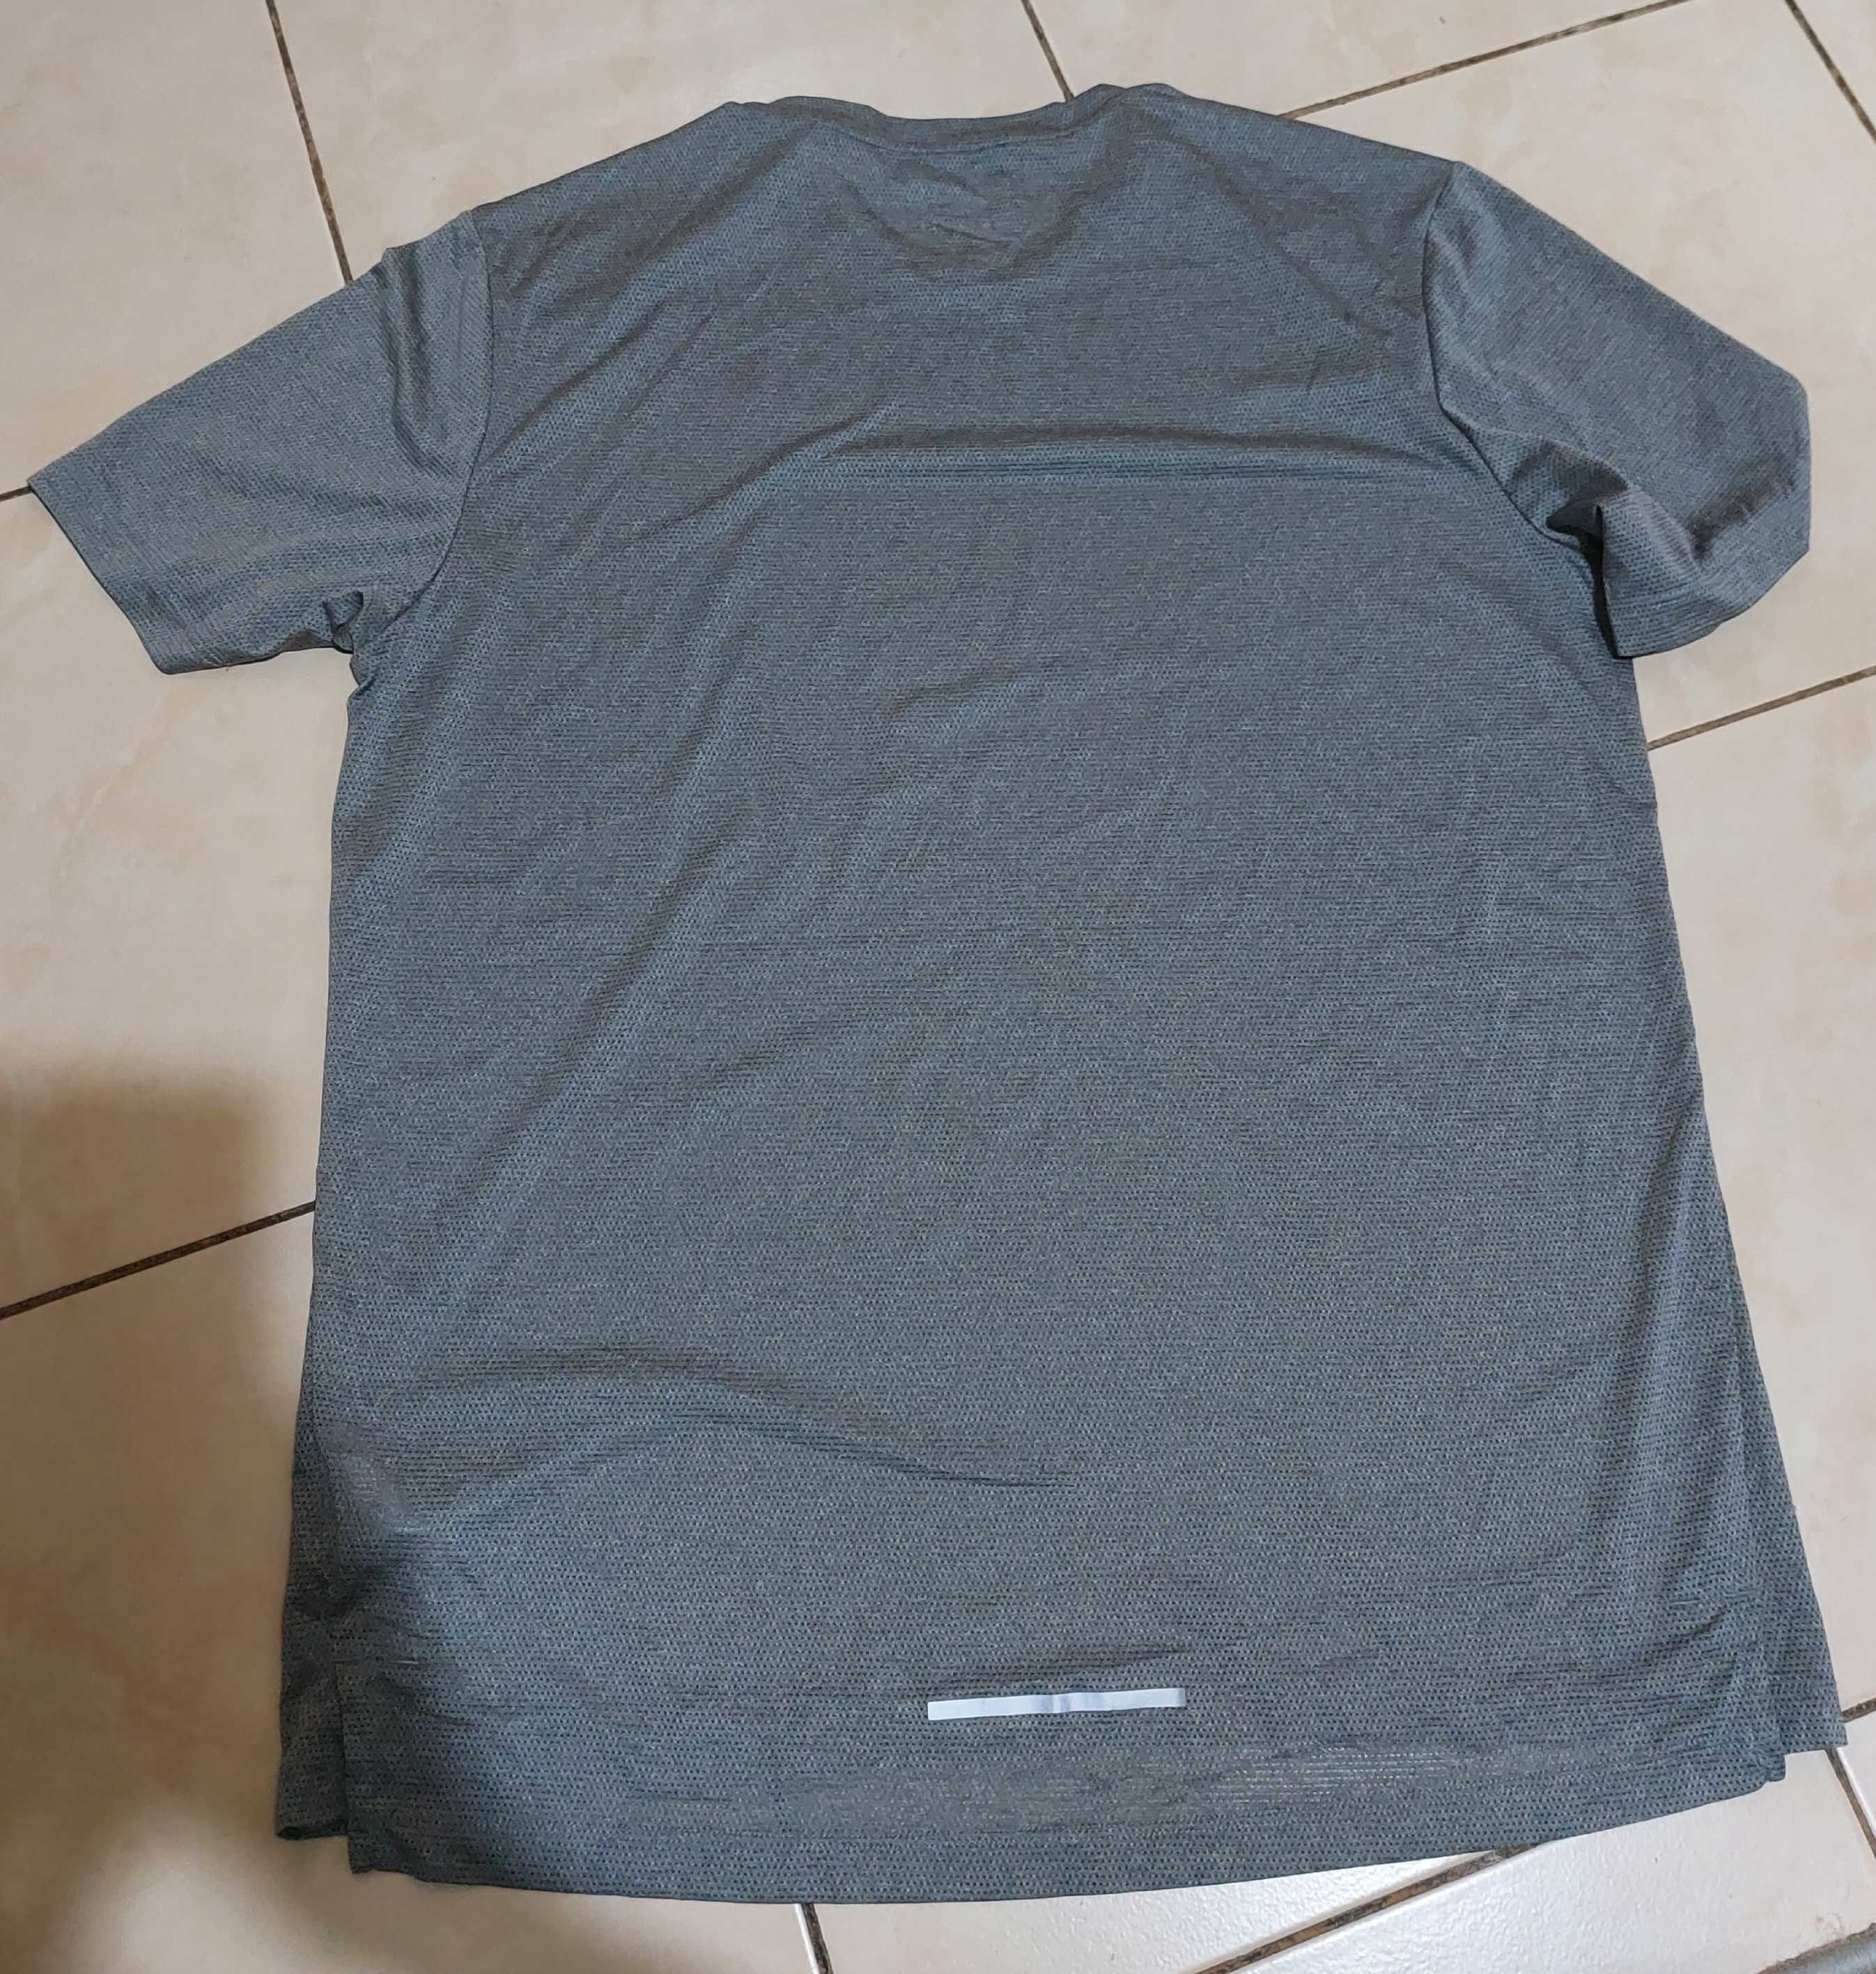 Мужская спортивная футболка Nike Running размер М